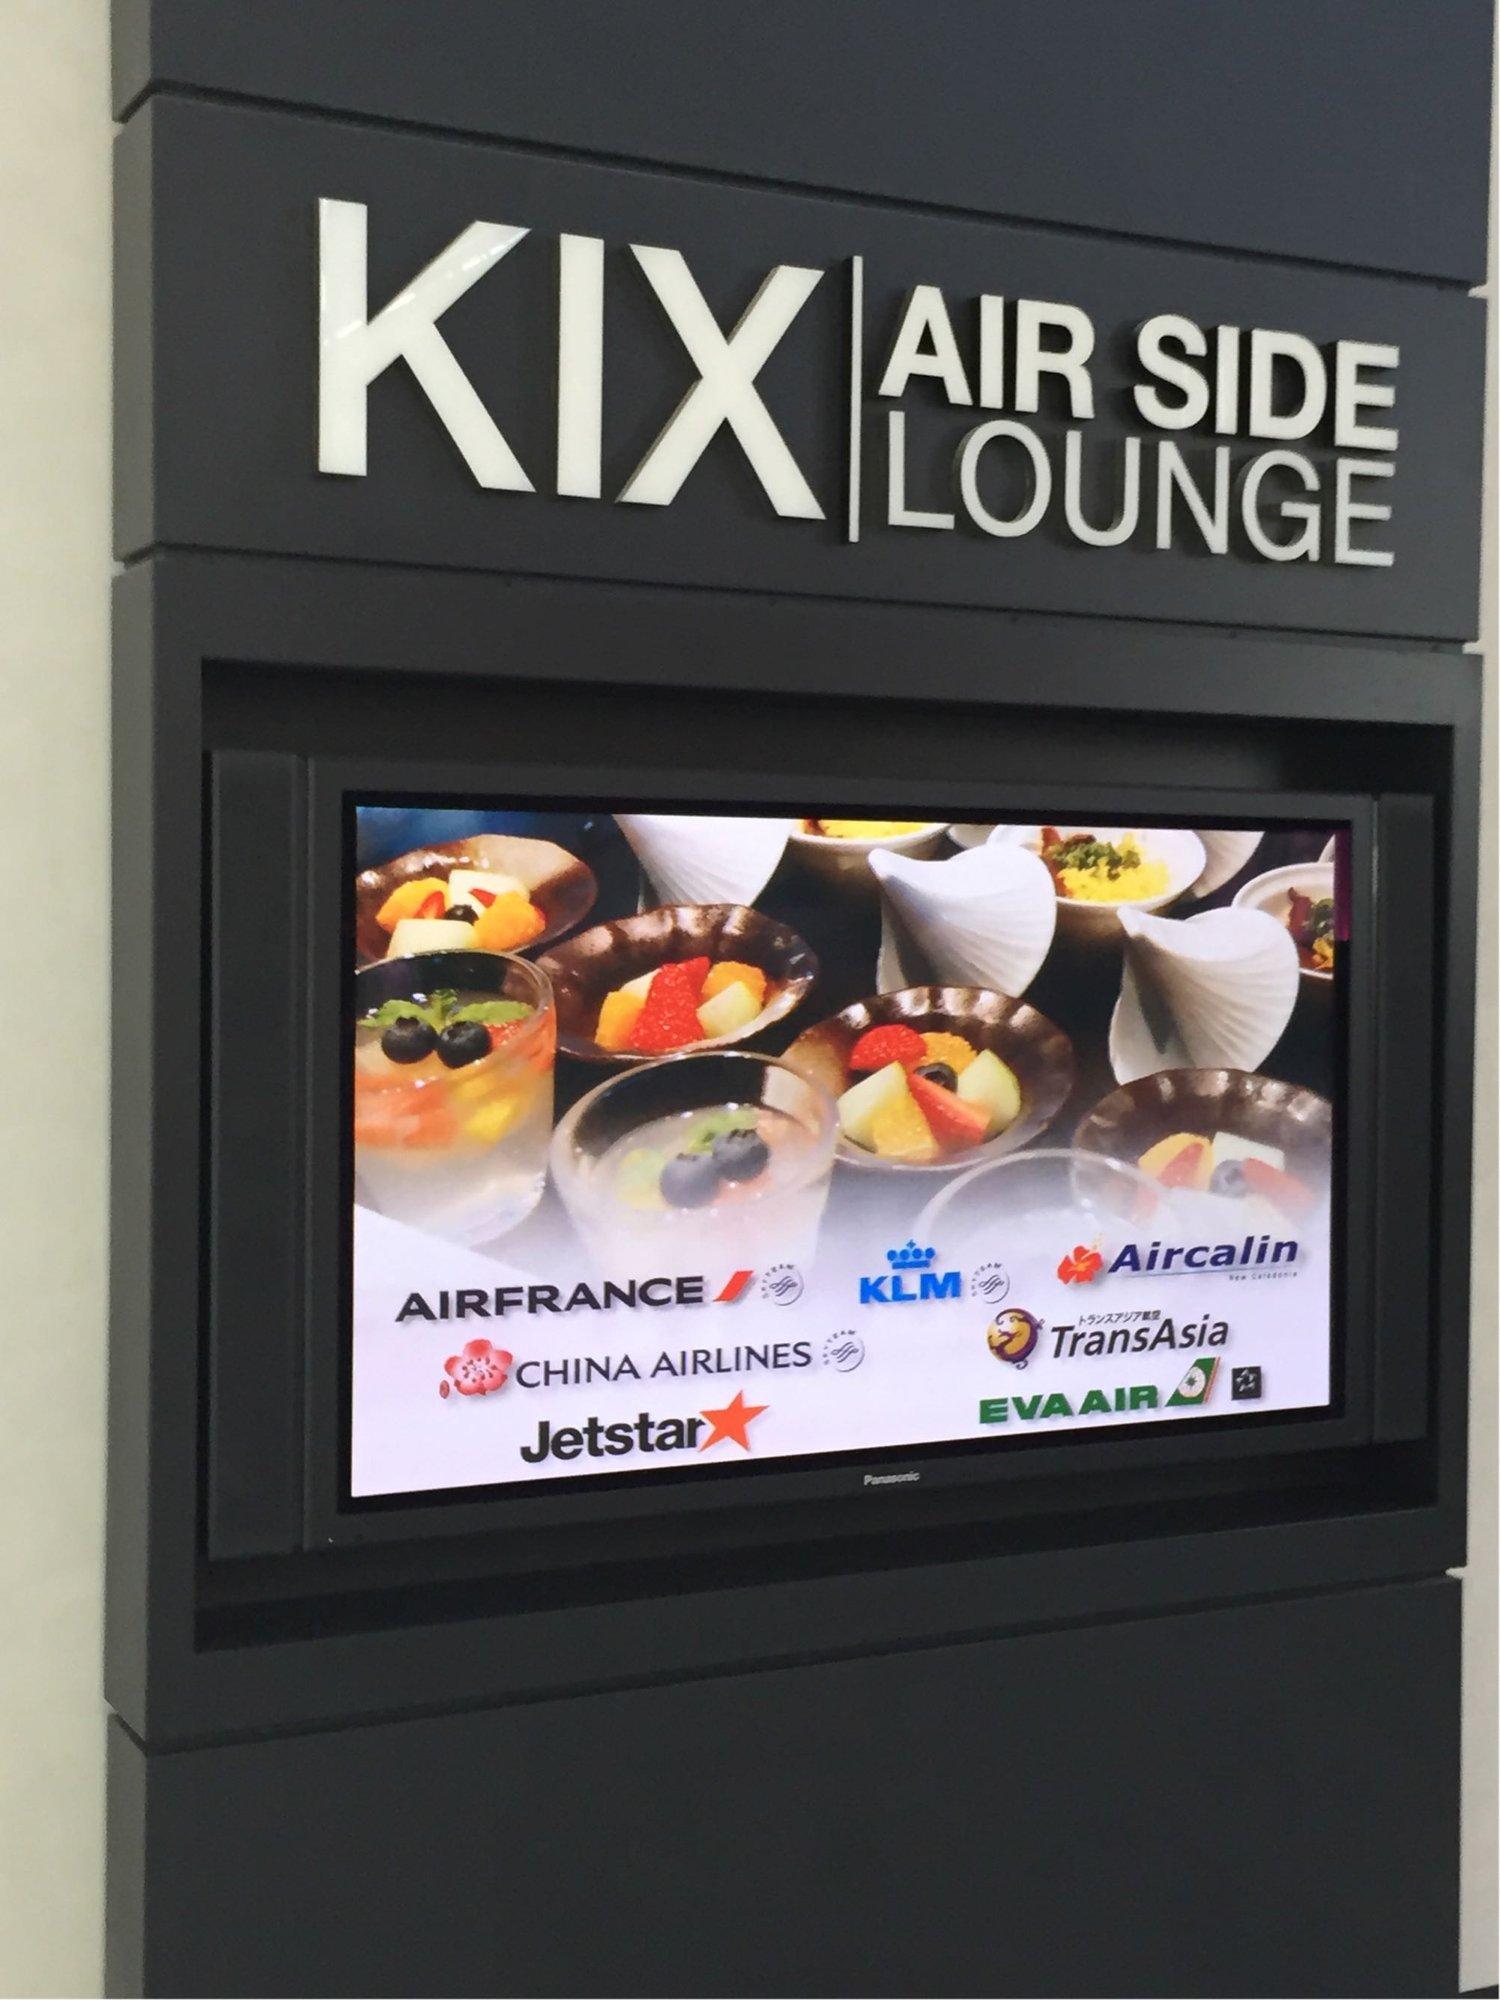 KIX Airside Lounge image 1 of 3